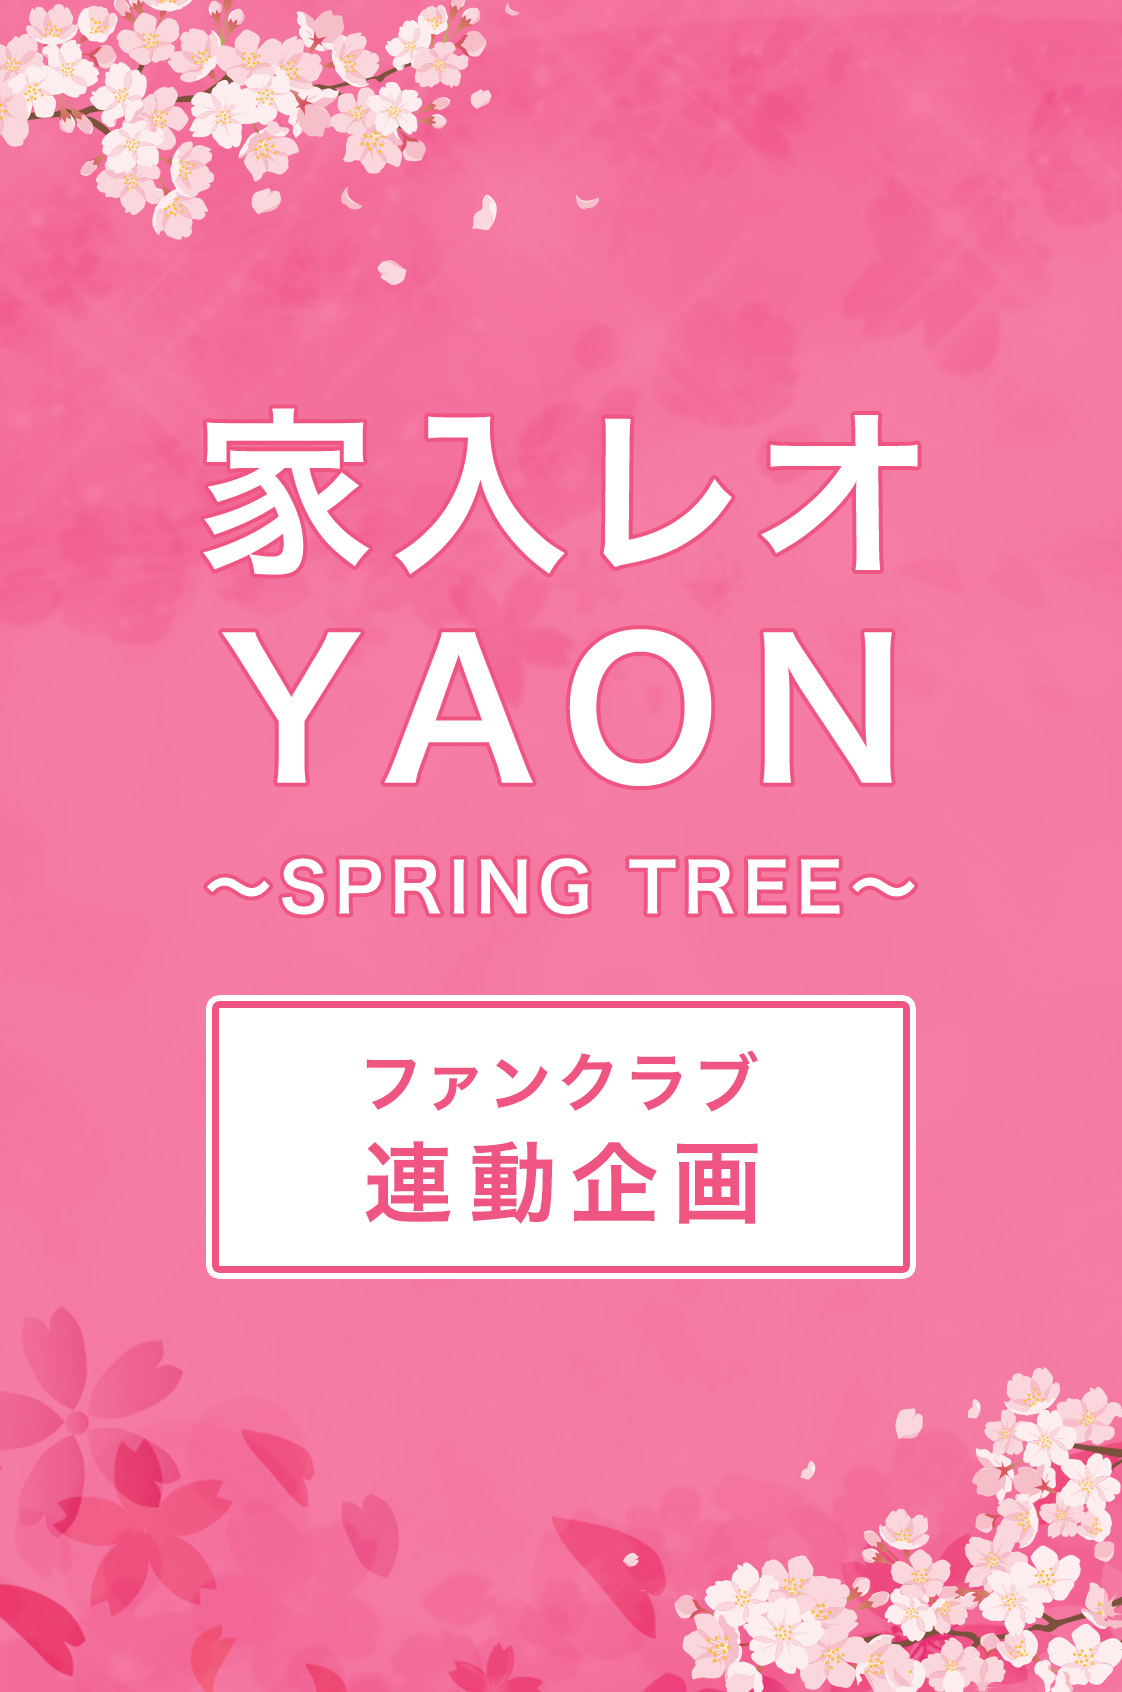 「家入レオ YAON 〜SPRING TREE〜」連動企画